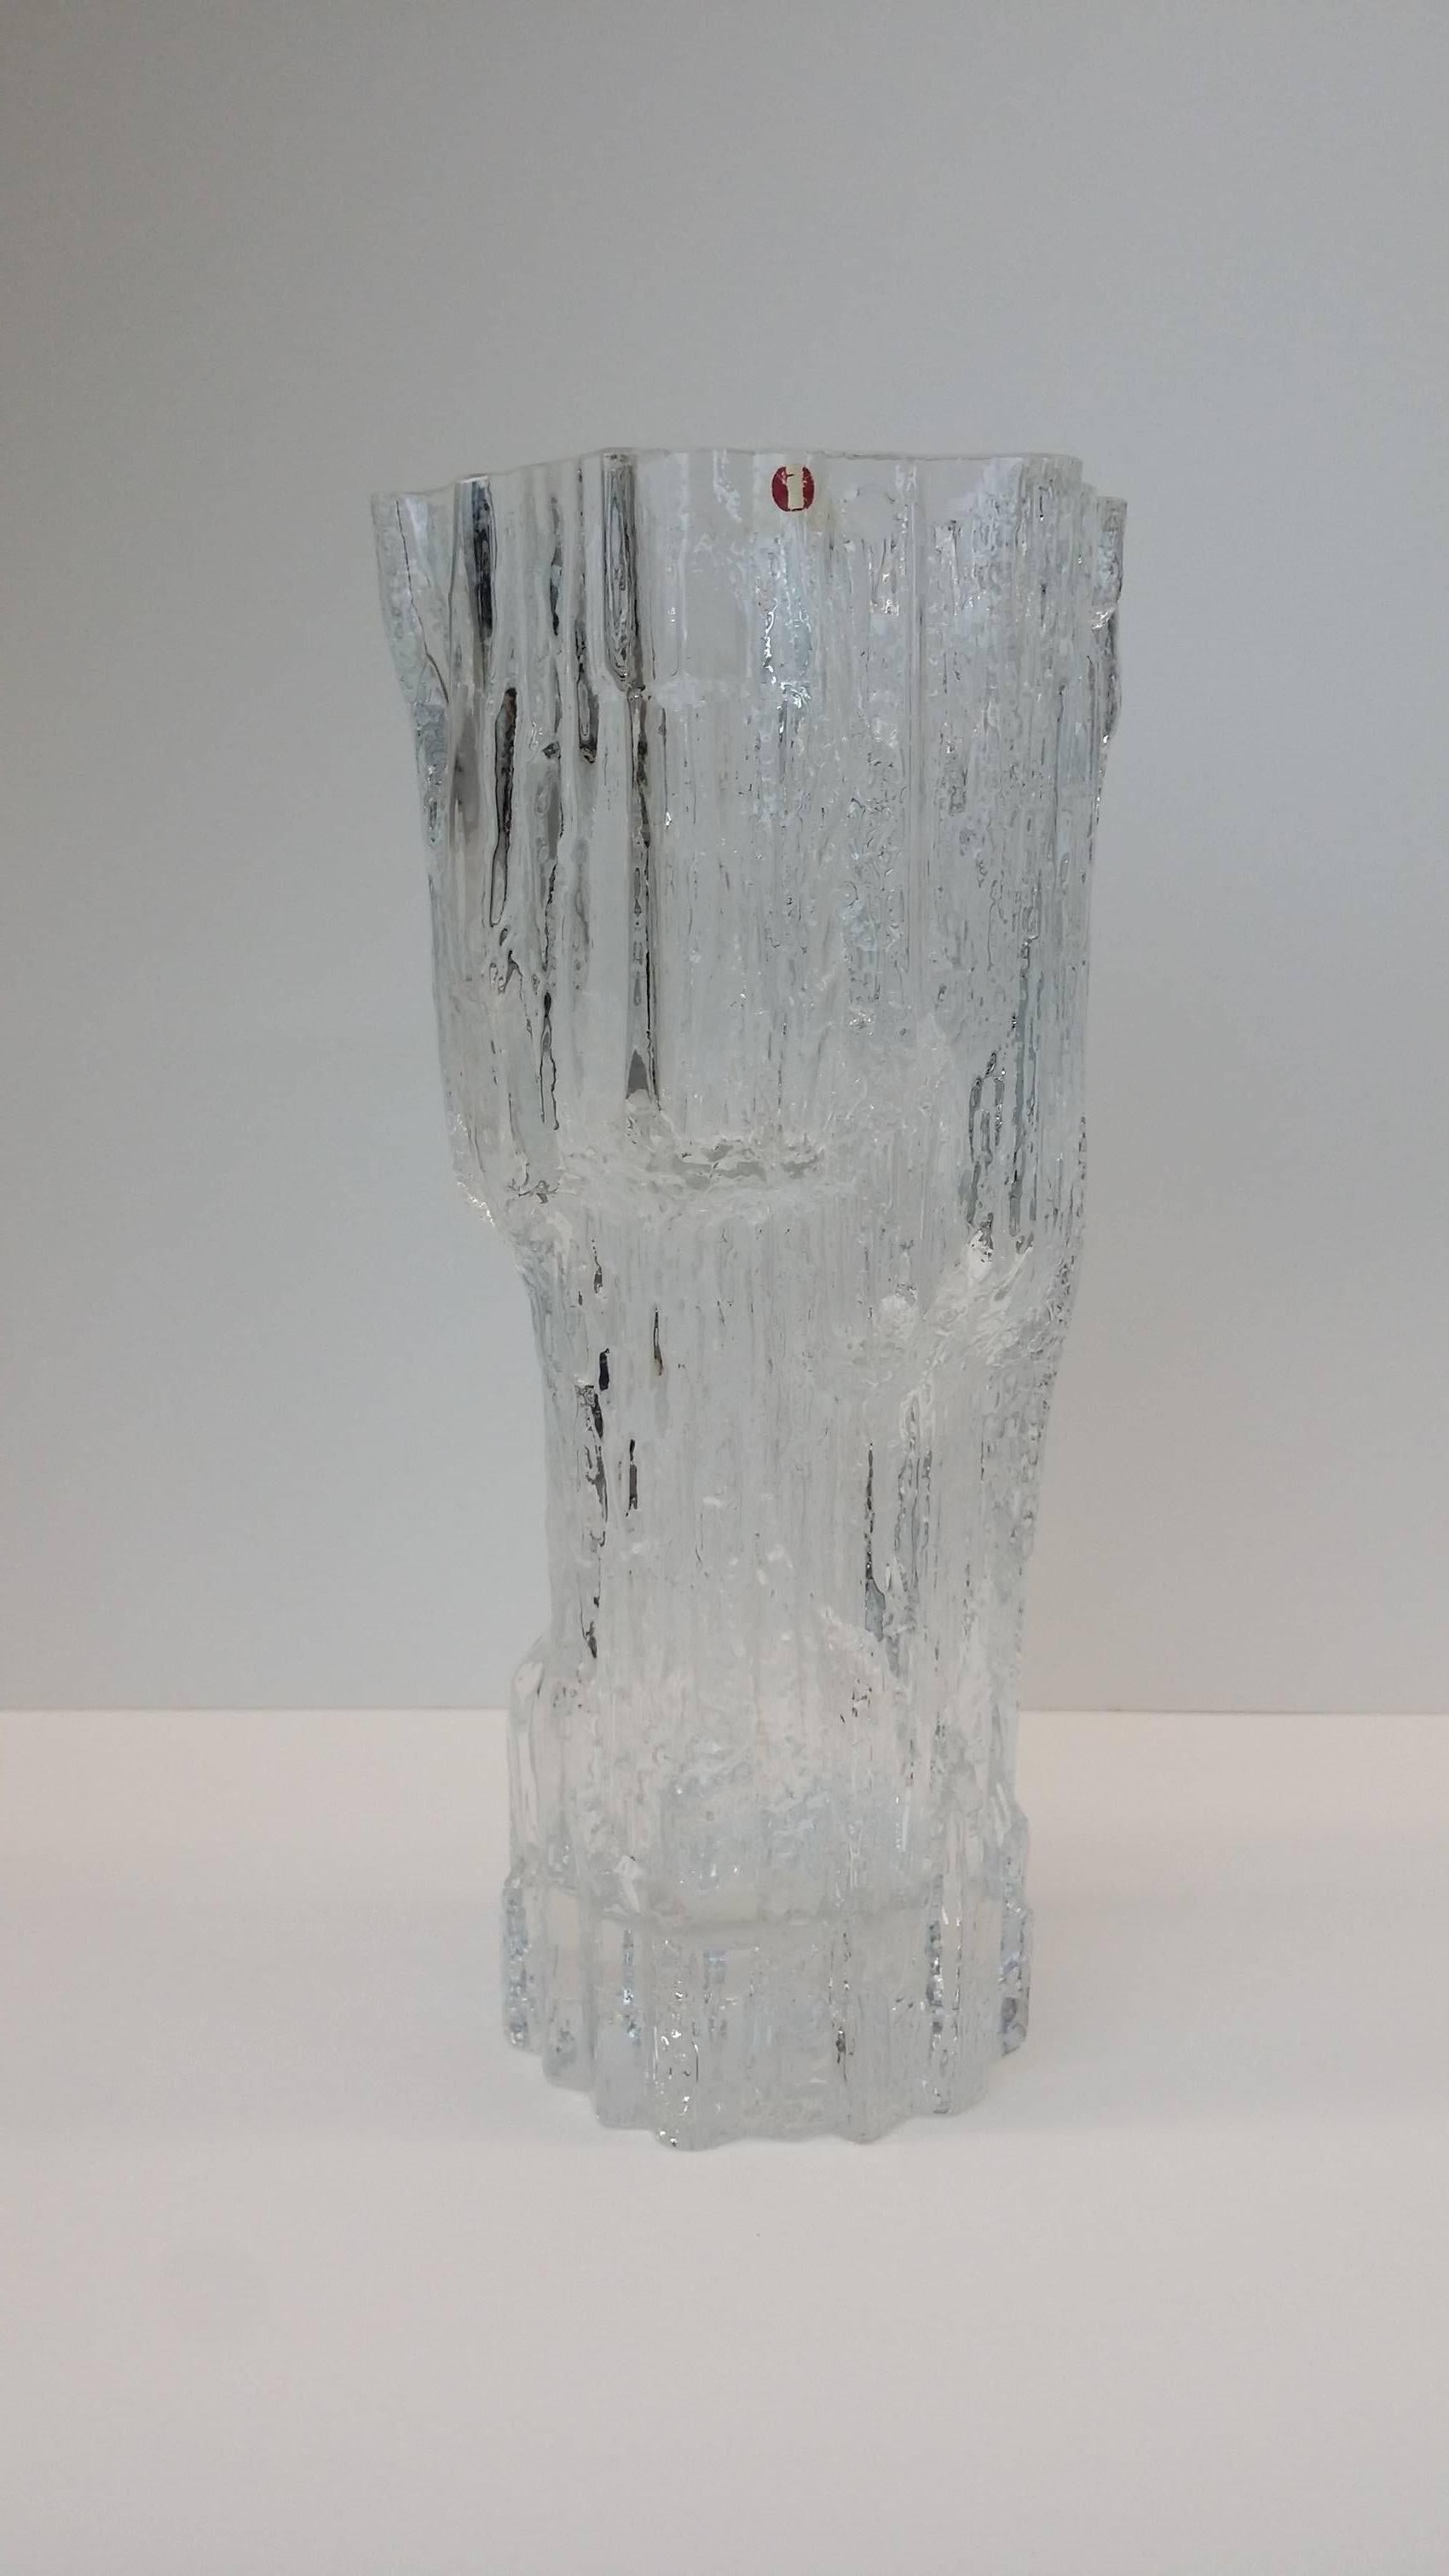 Tapio Wirkkala für Iittala Vase Icicle.

* Kostenloser Versand nur zum vollen Preis.